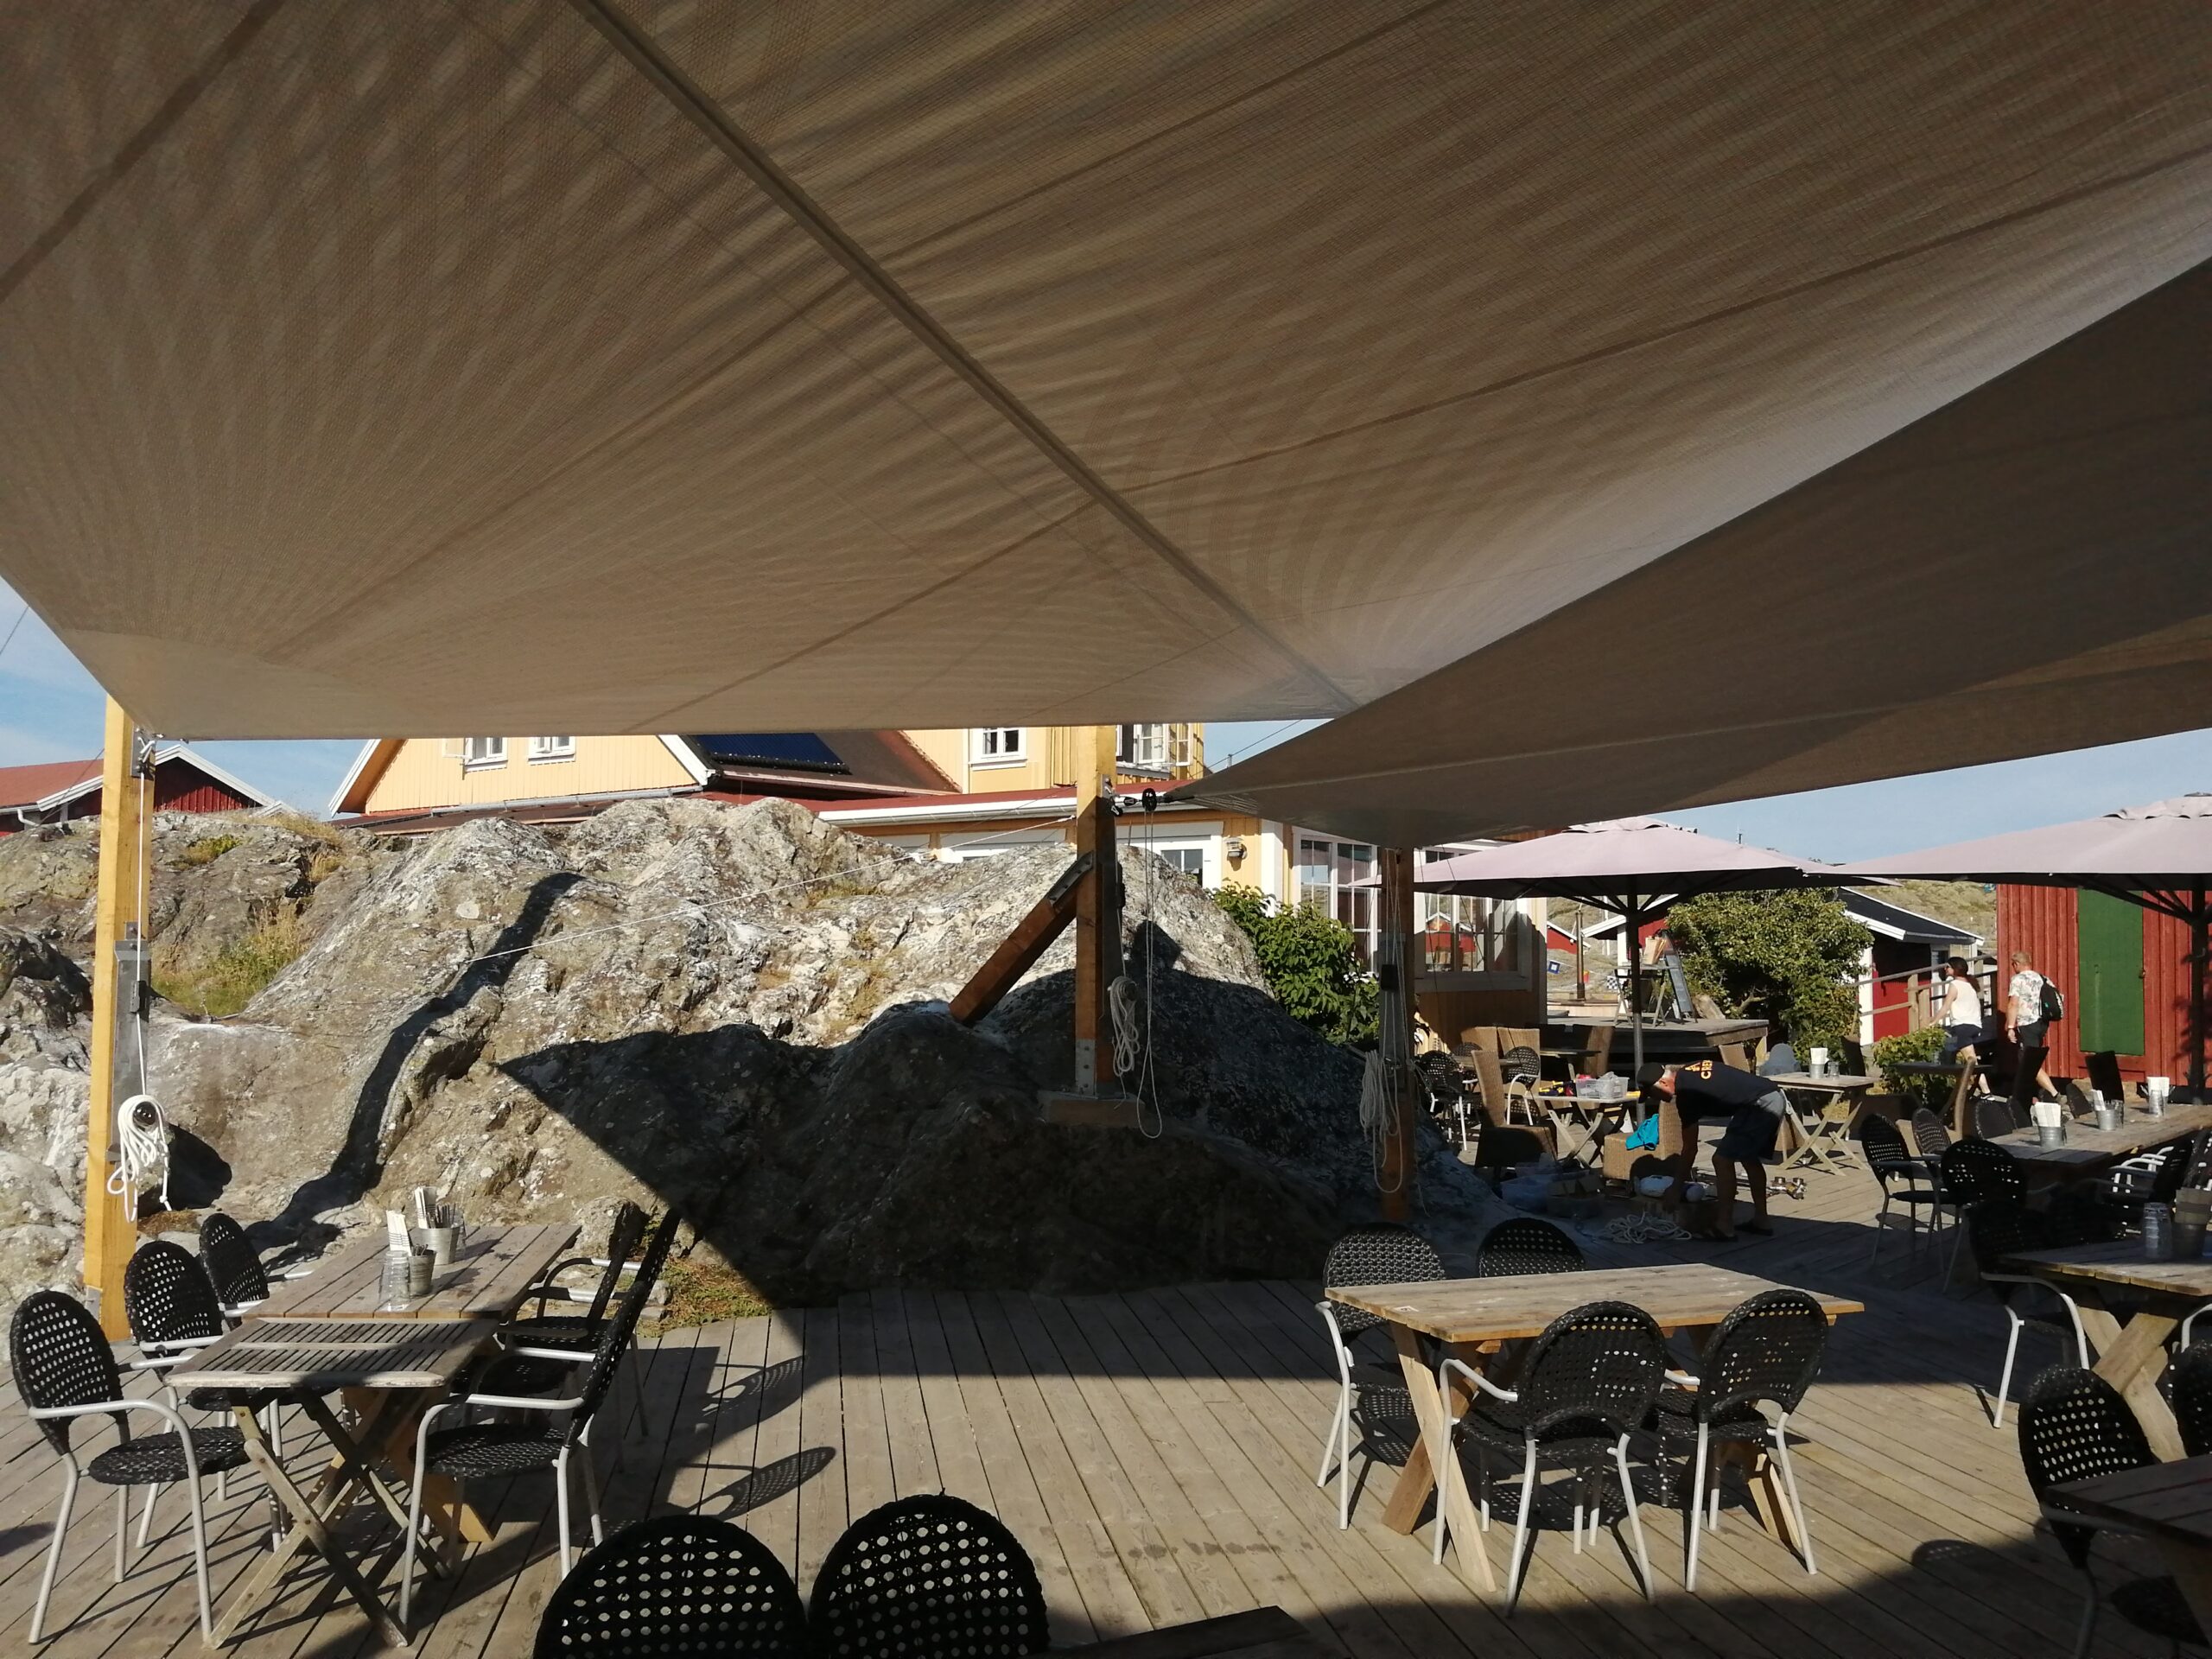 Utomhusrestaurang skyddad av ett stort beige solsegel med pergolamarkis, mot en bakgrund av klippor och trähus.